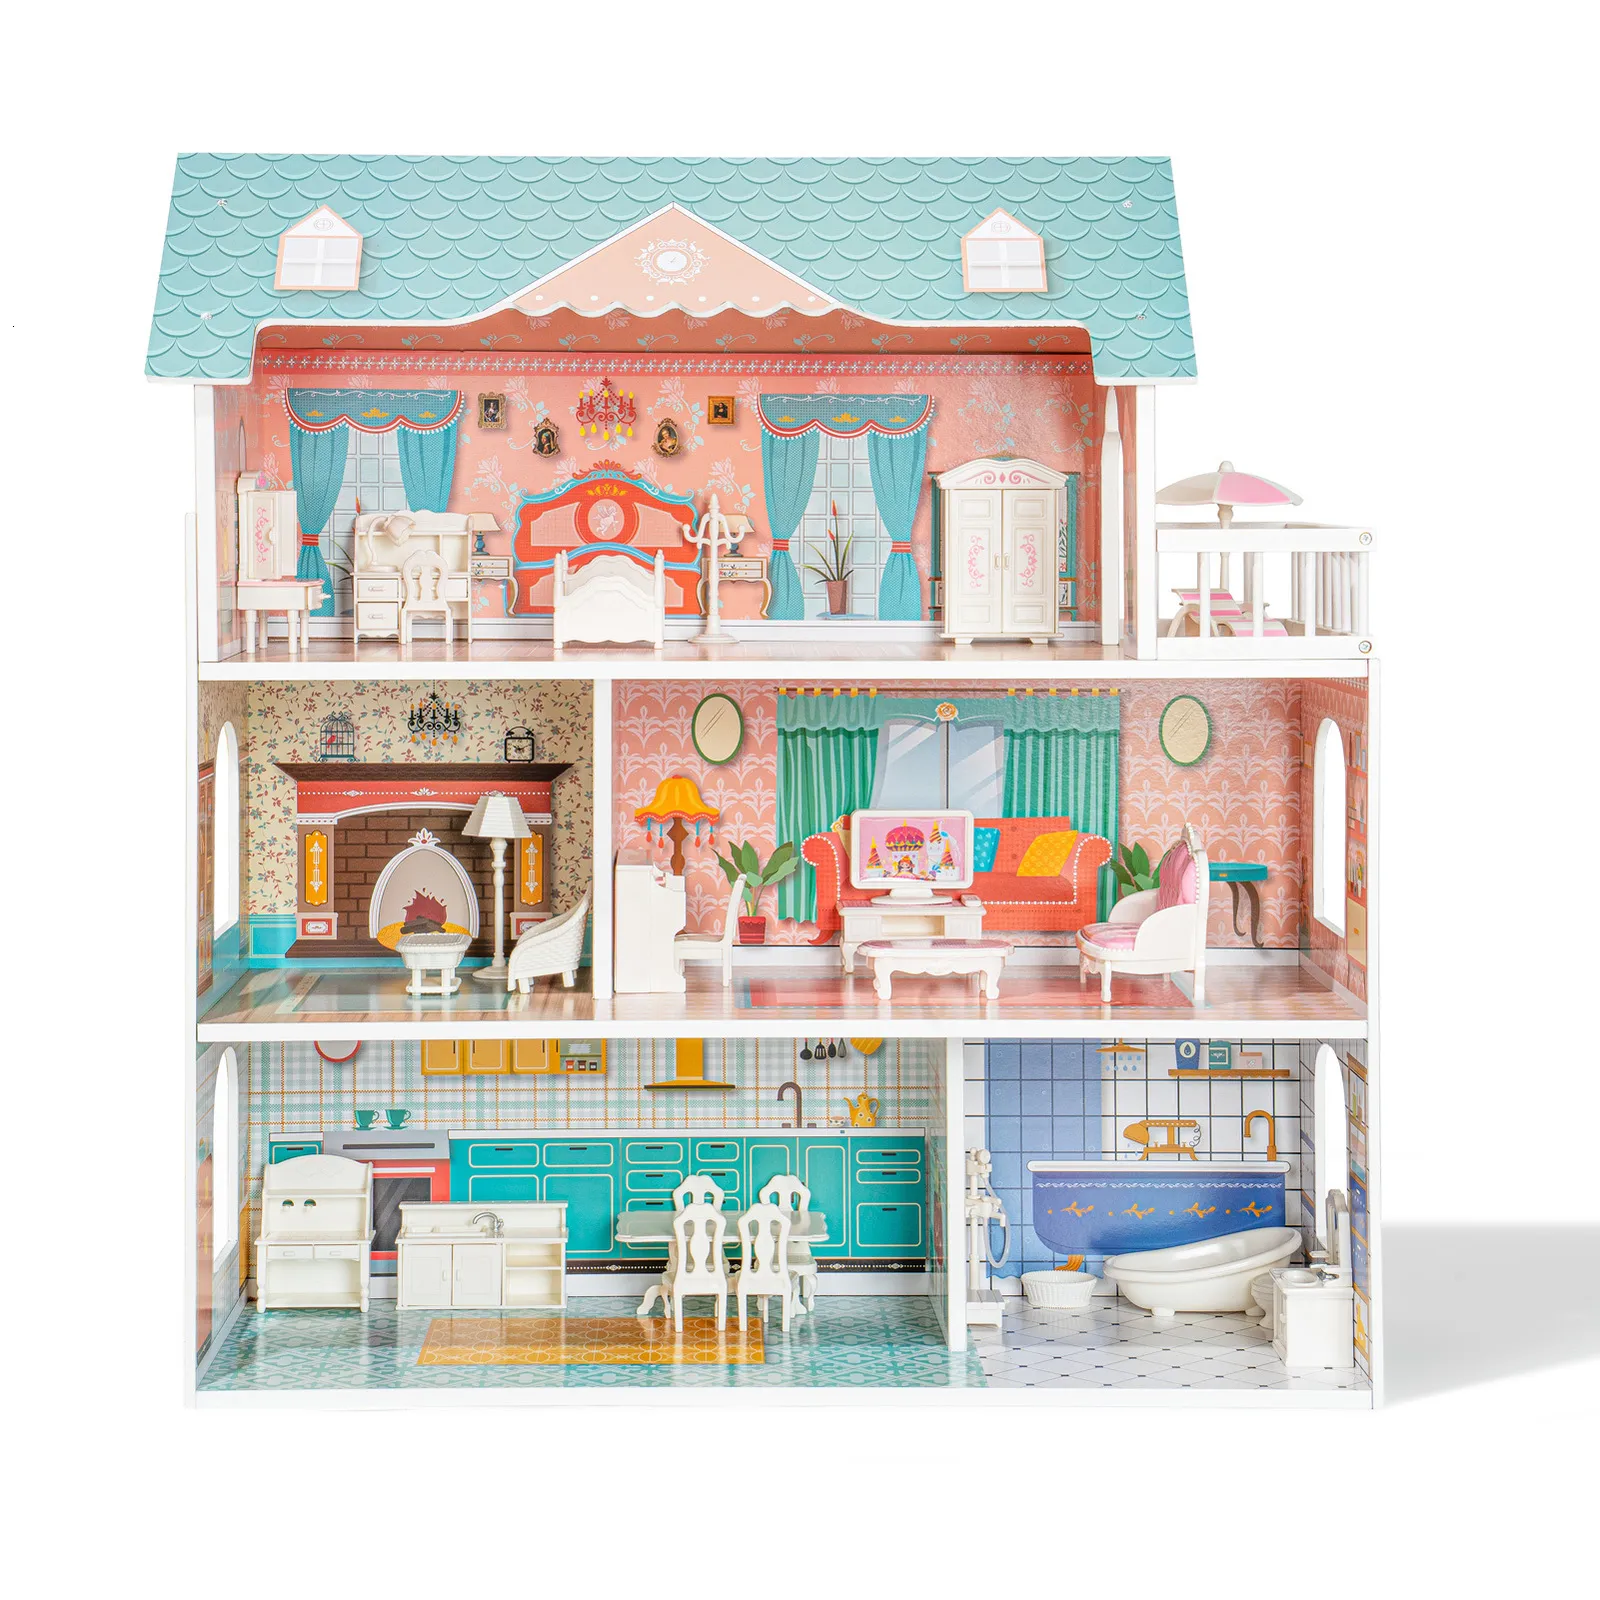 Puppen Robud Puppenhaus Holzpuppenhaus für Kinder im Alter von 3 4 5 6 Jahren 28 Stück Möbel Kunststoff Geburtstagsgeschenke Toddle 230922